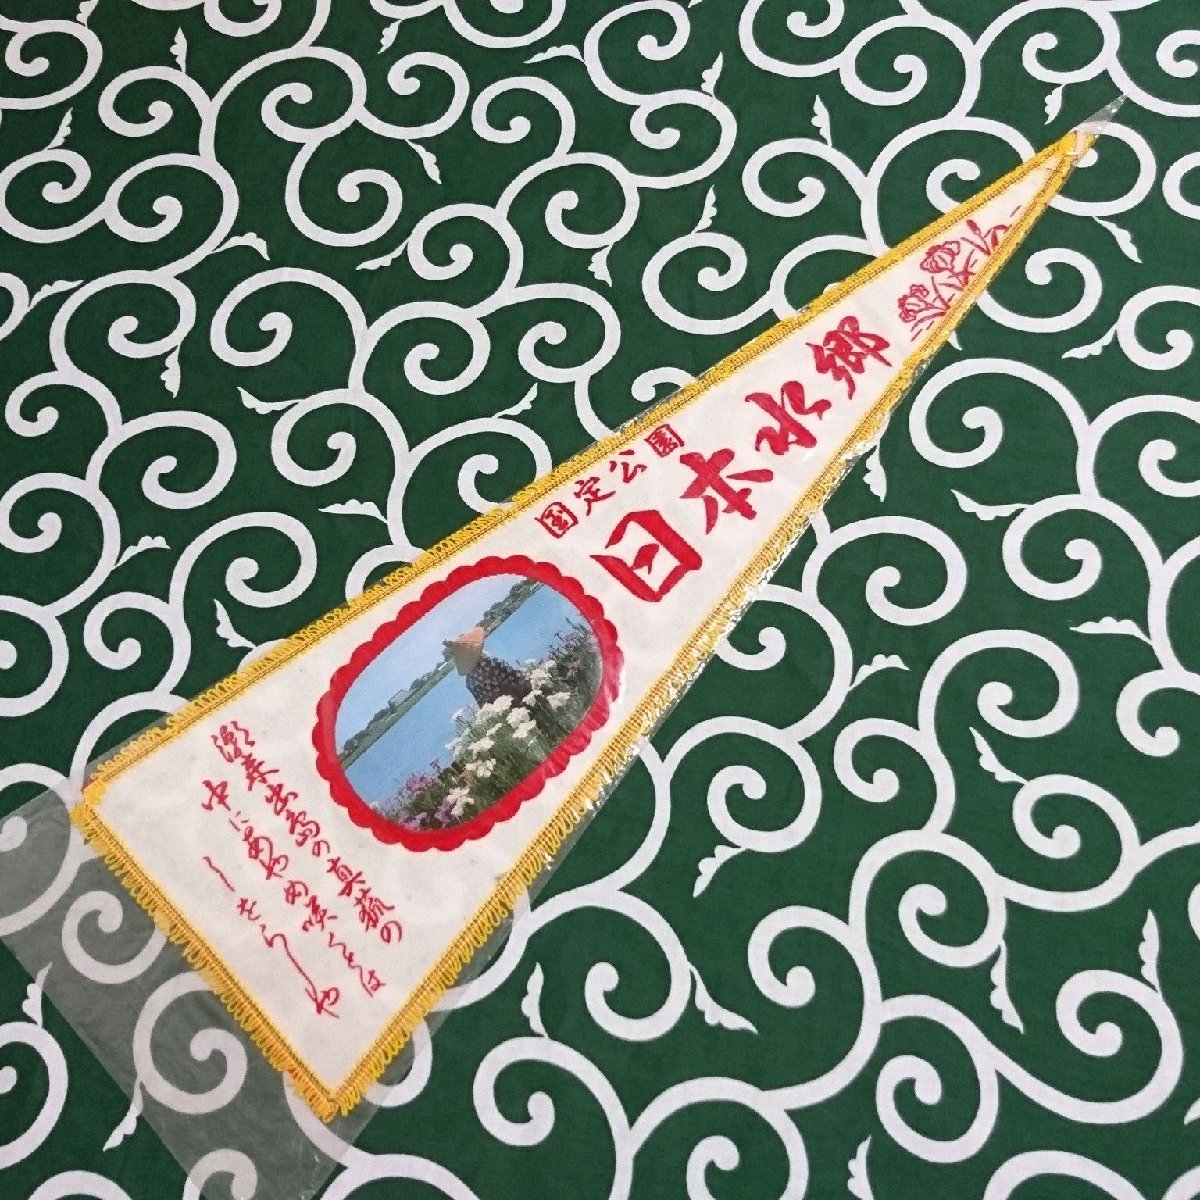 送料無料)日本水郷 昭和レトロ ご当地 観光地 旅行 記念 お土産 全長65cm ペナント A15236_画像1